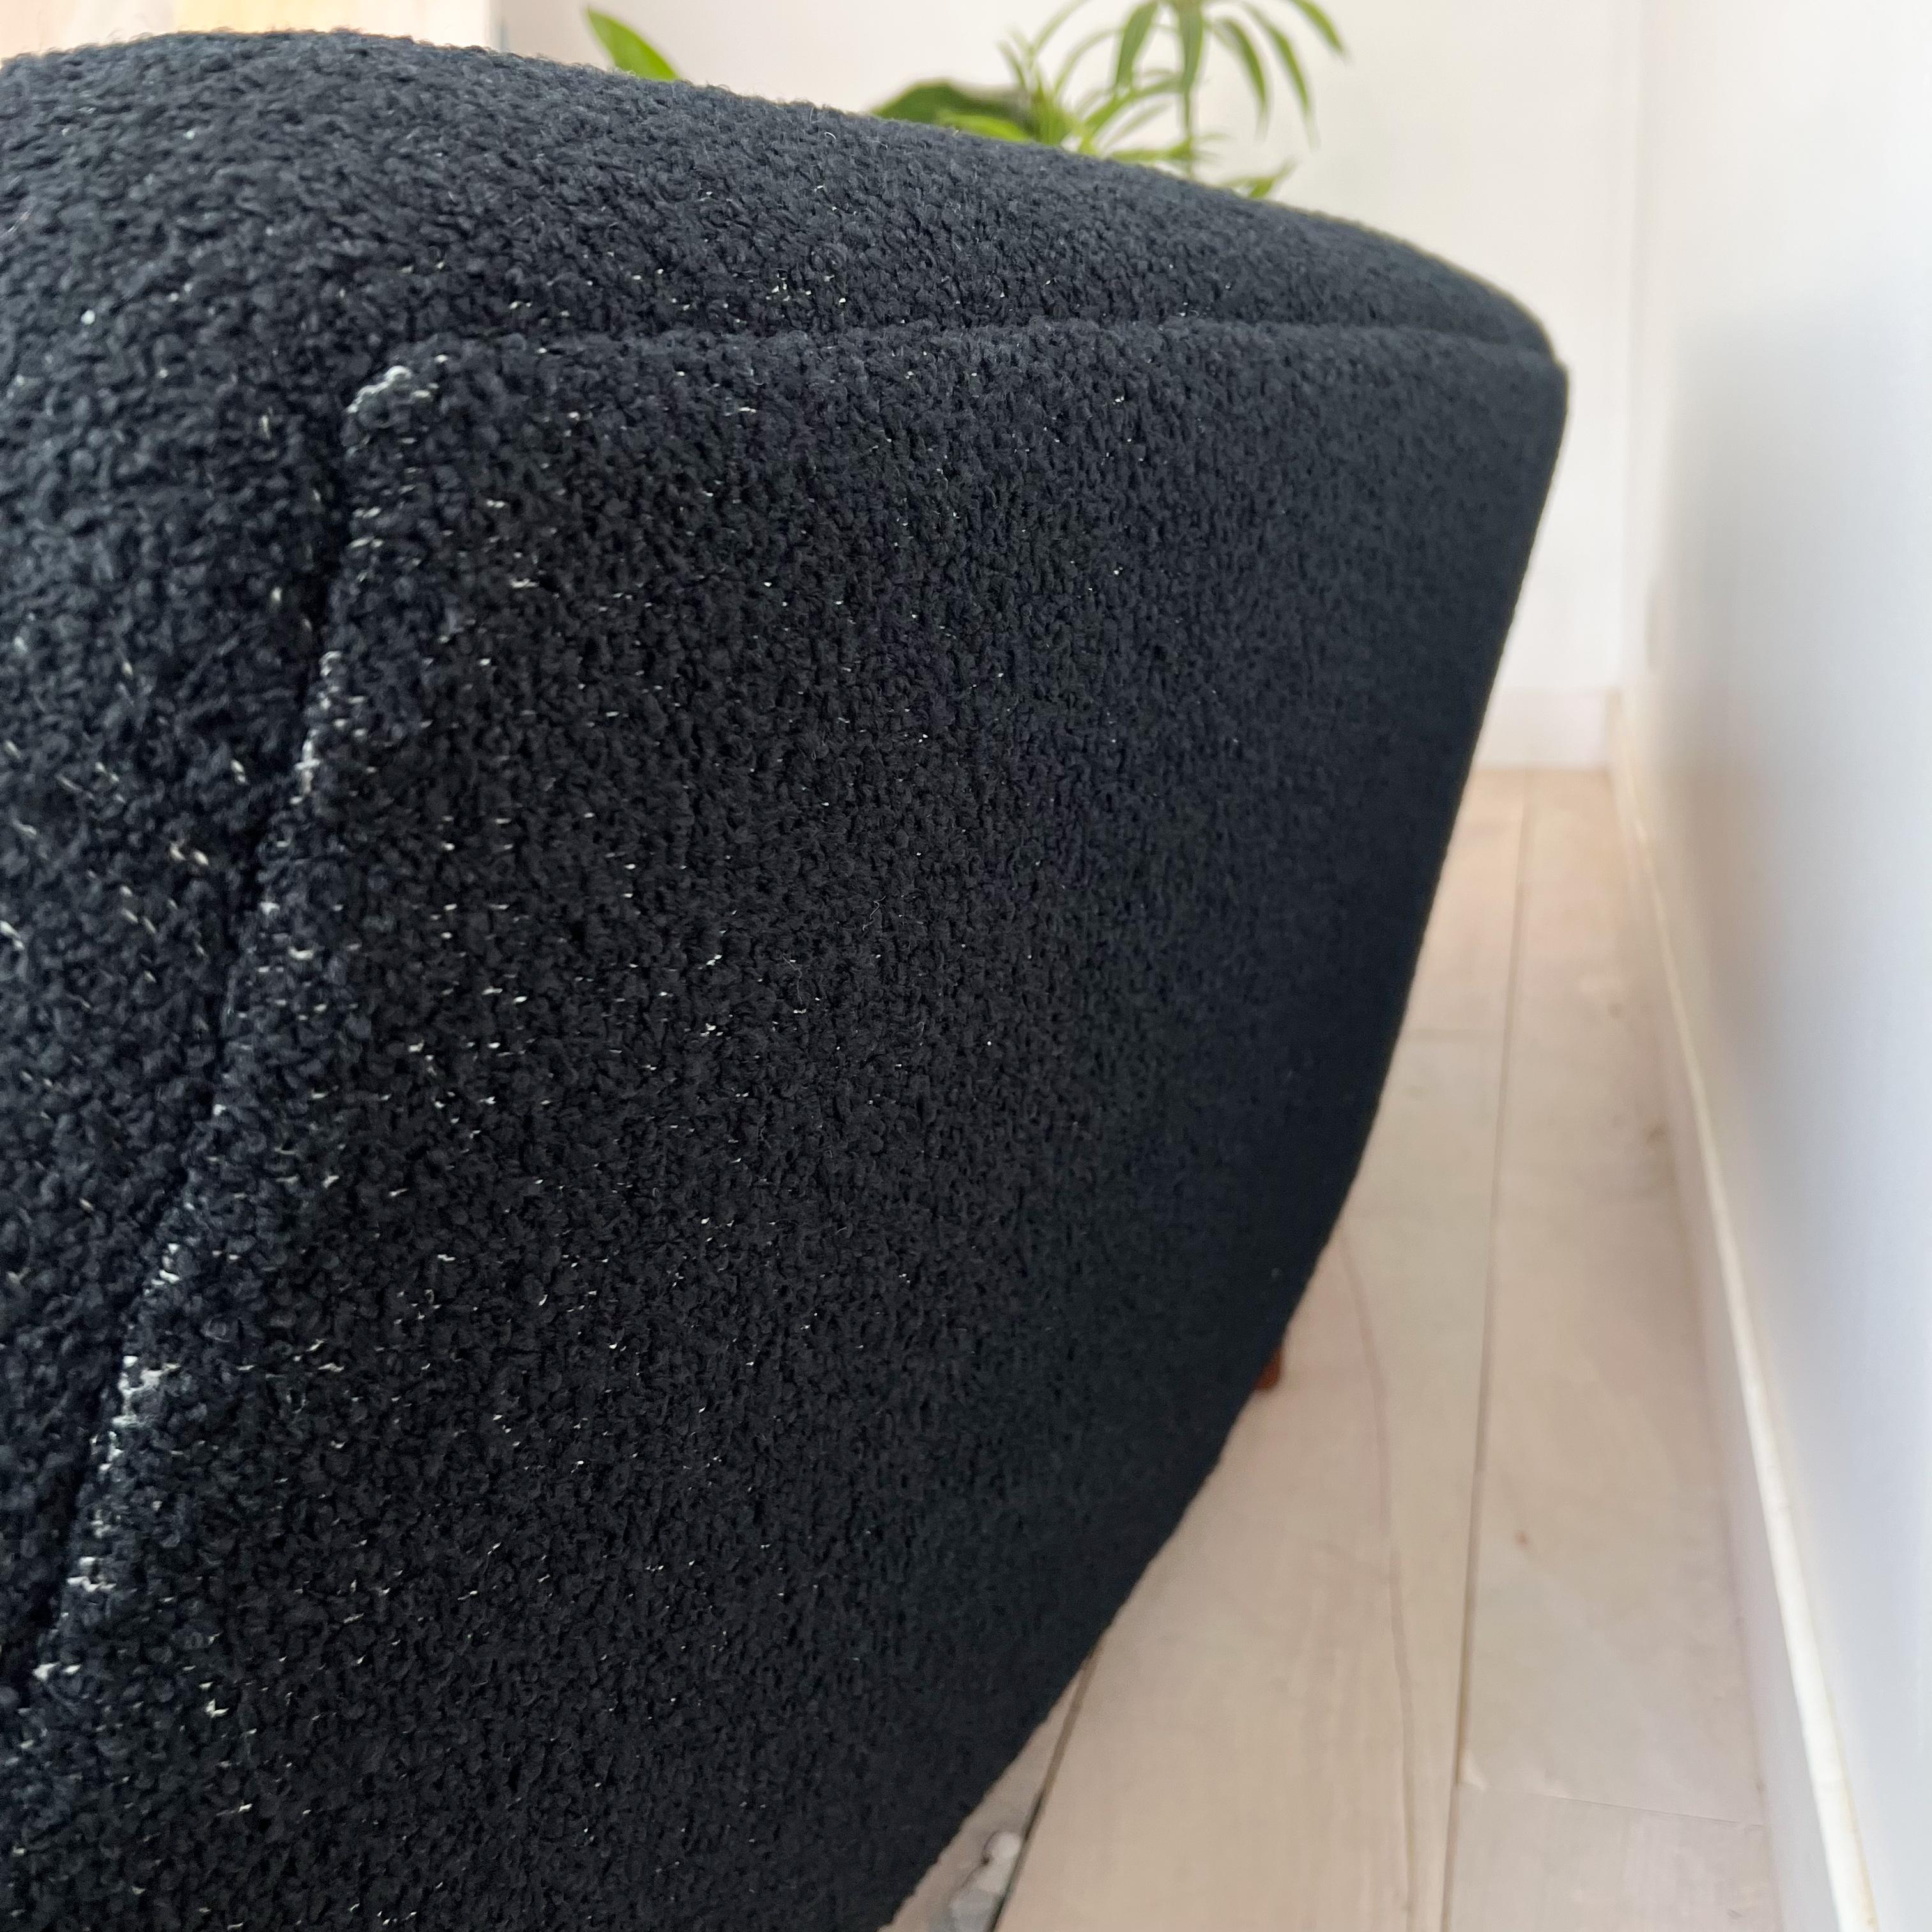 Illum Wikkelso's Rare Banana Curved Sofa - Model 450 - New Upholstery 2